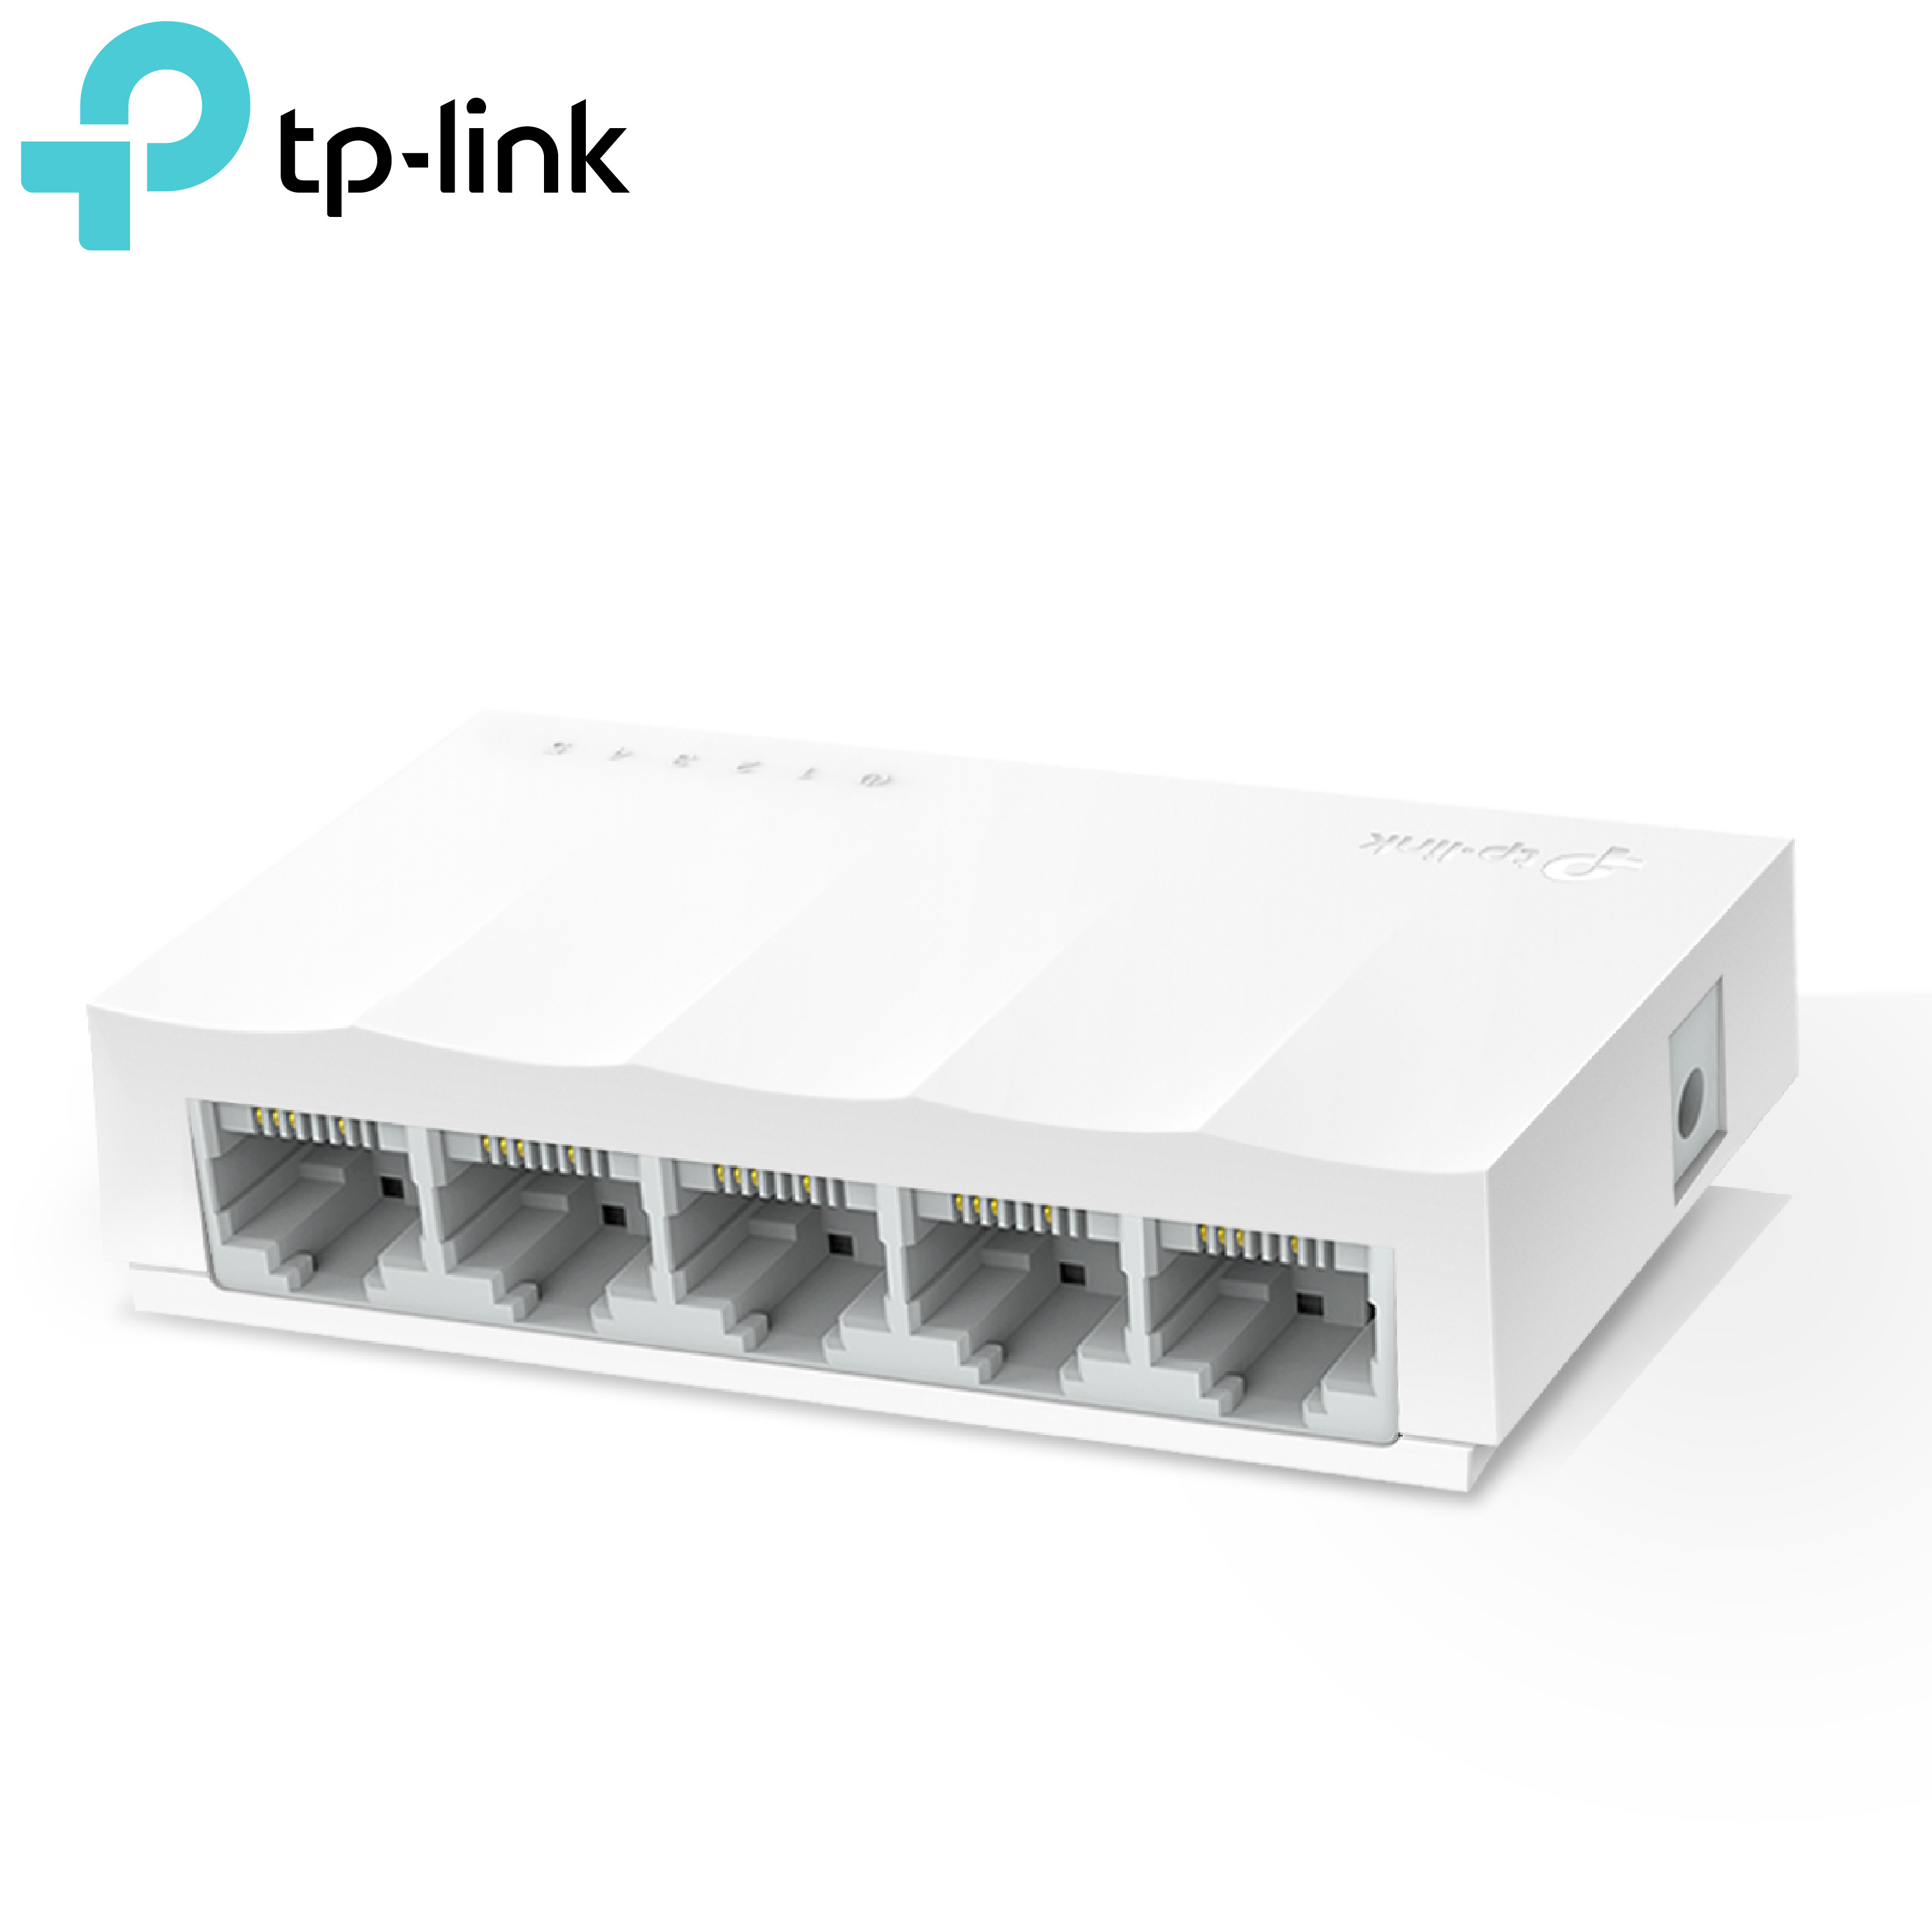 TP-LINK 5埠桌上型交換器